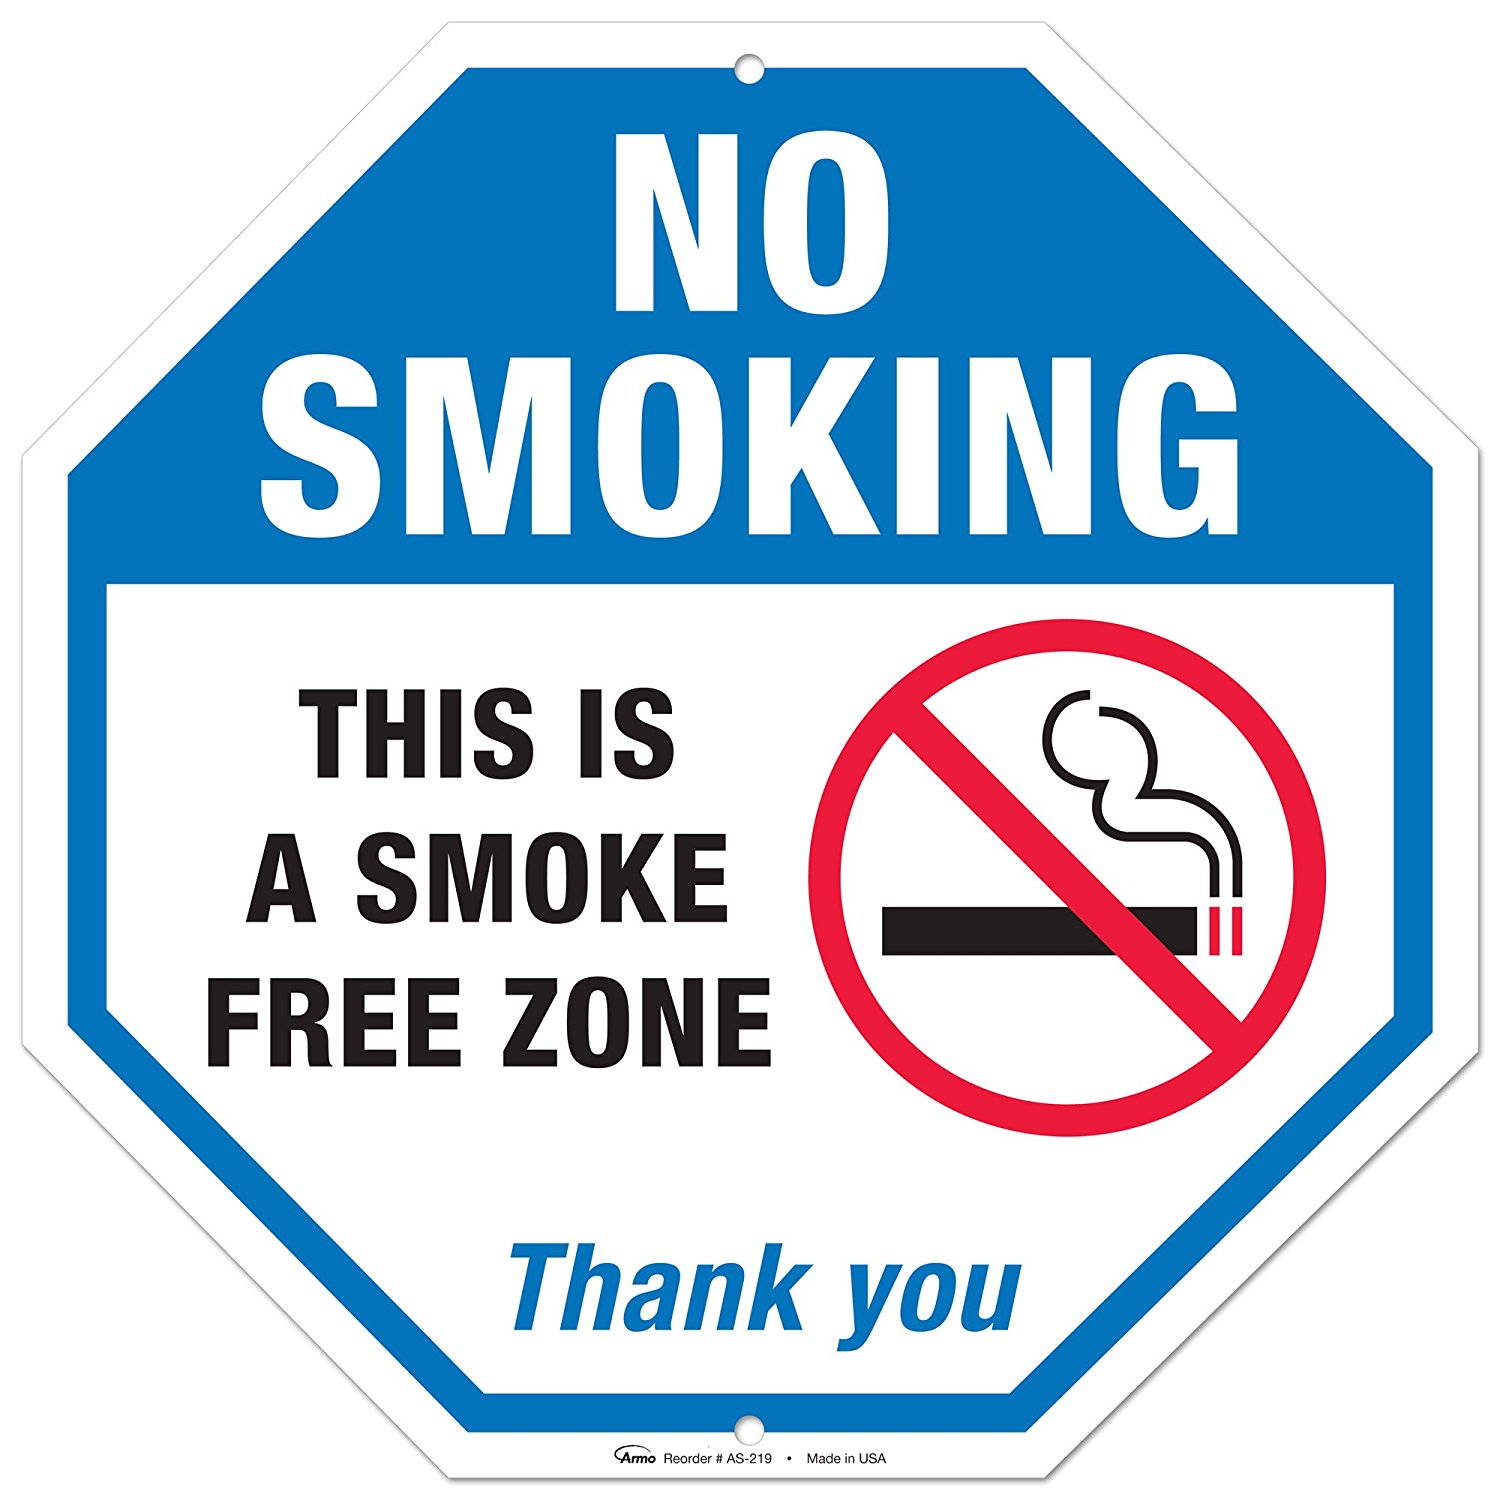 free download no smoking sign